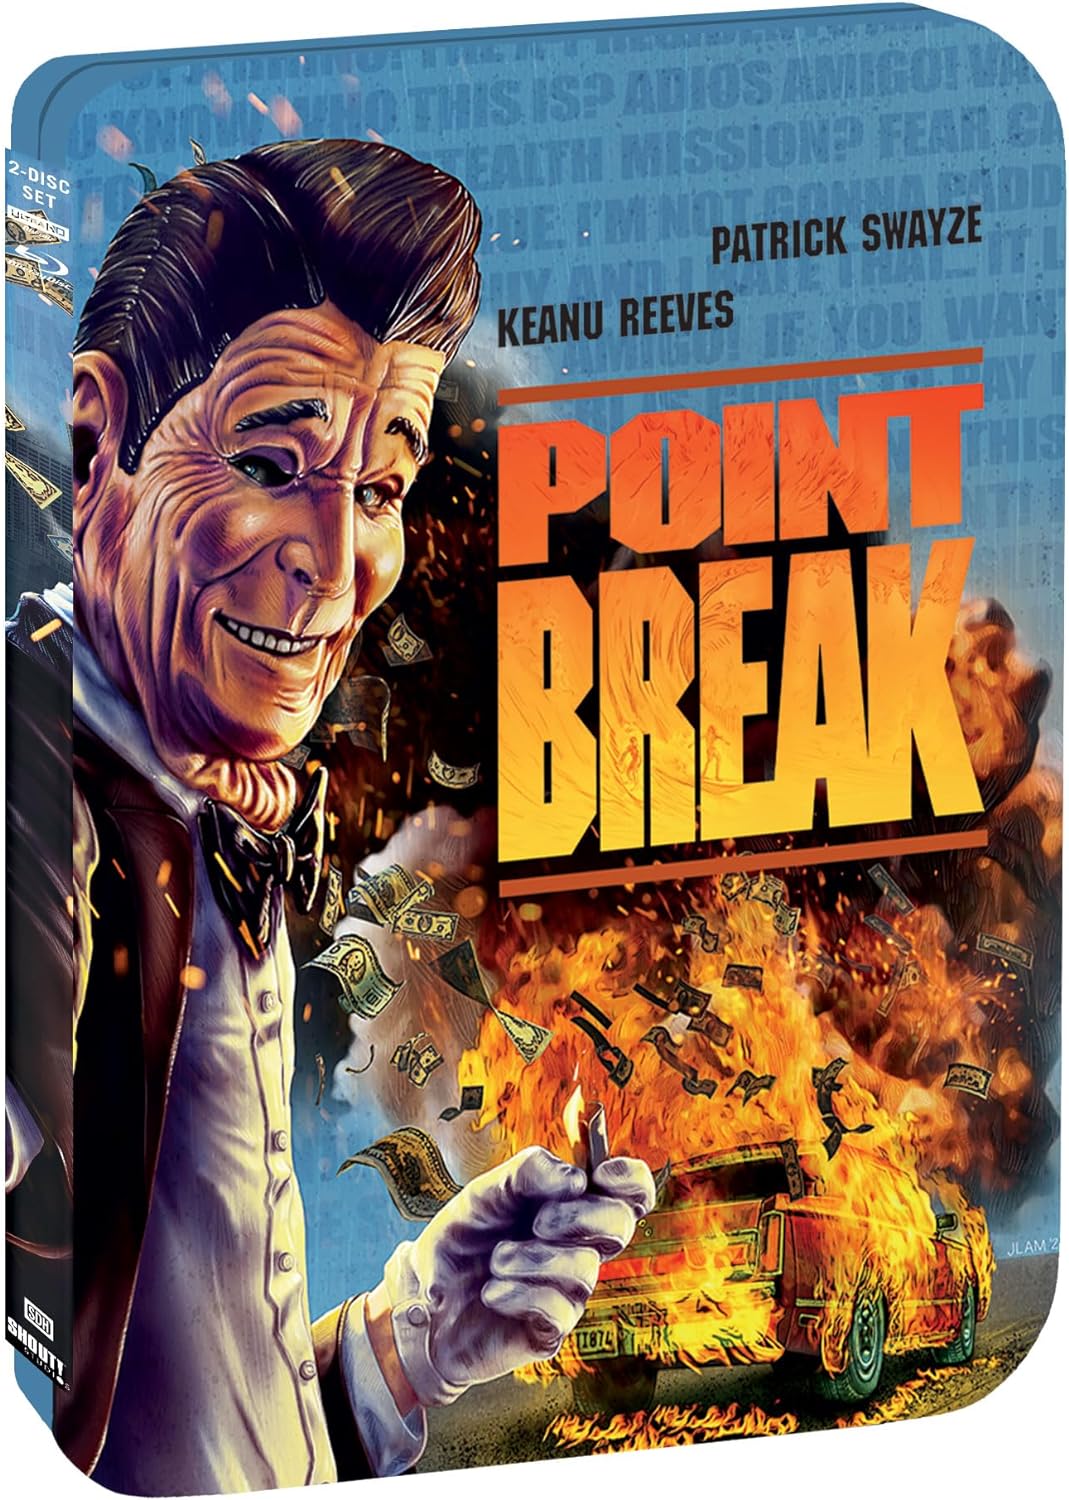 POINT BREAK (1991)